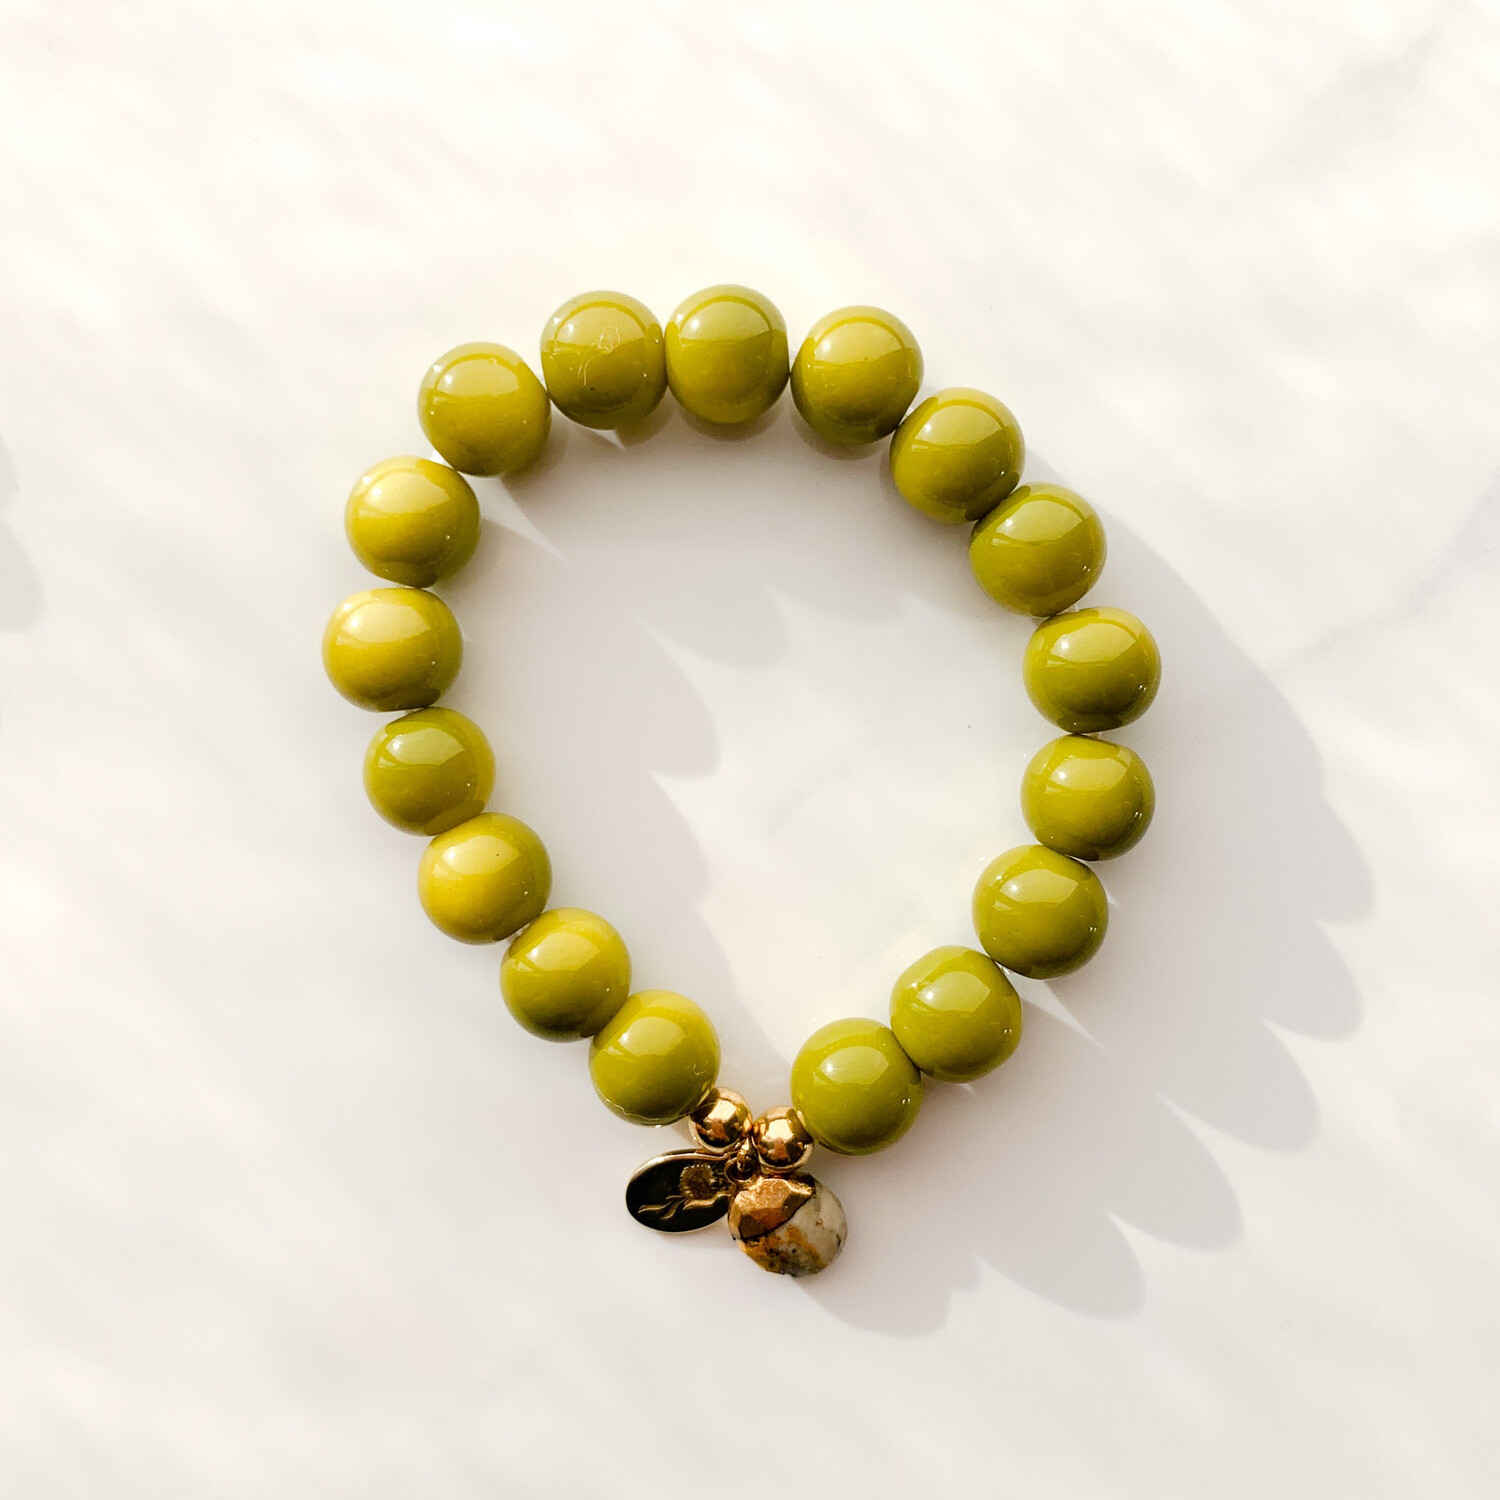 Charity Bracelet in Olive